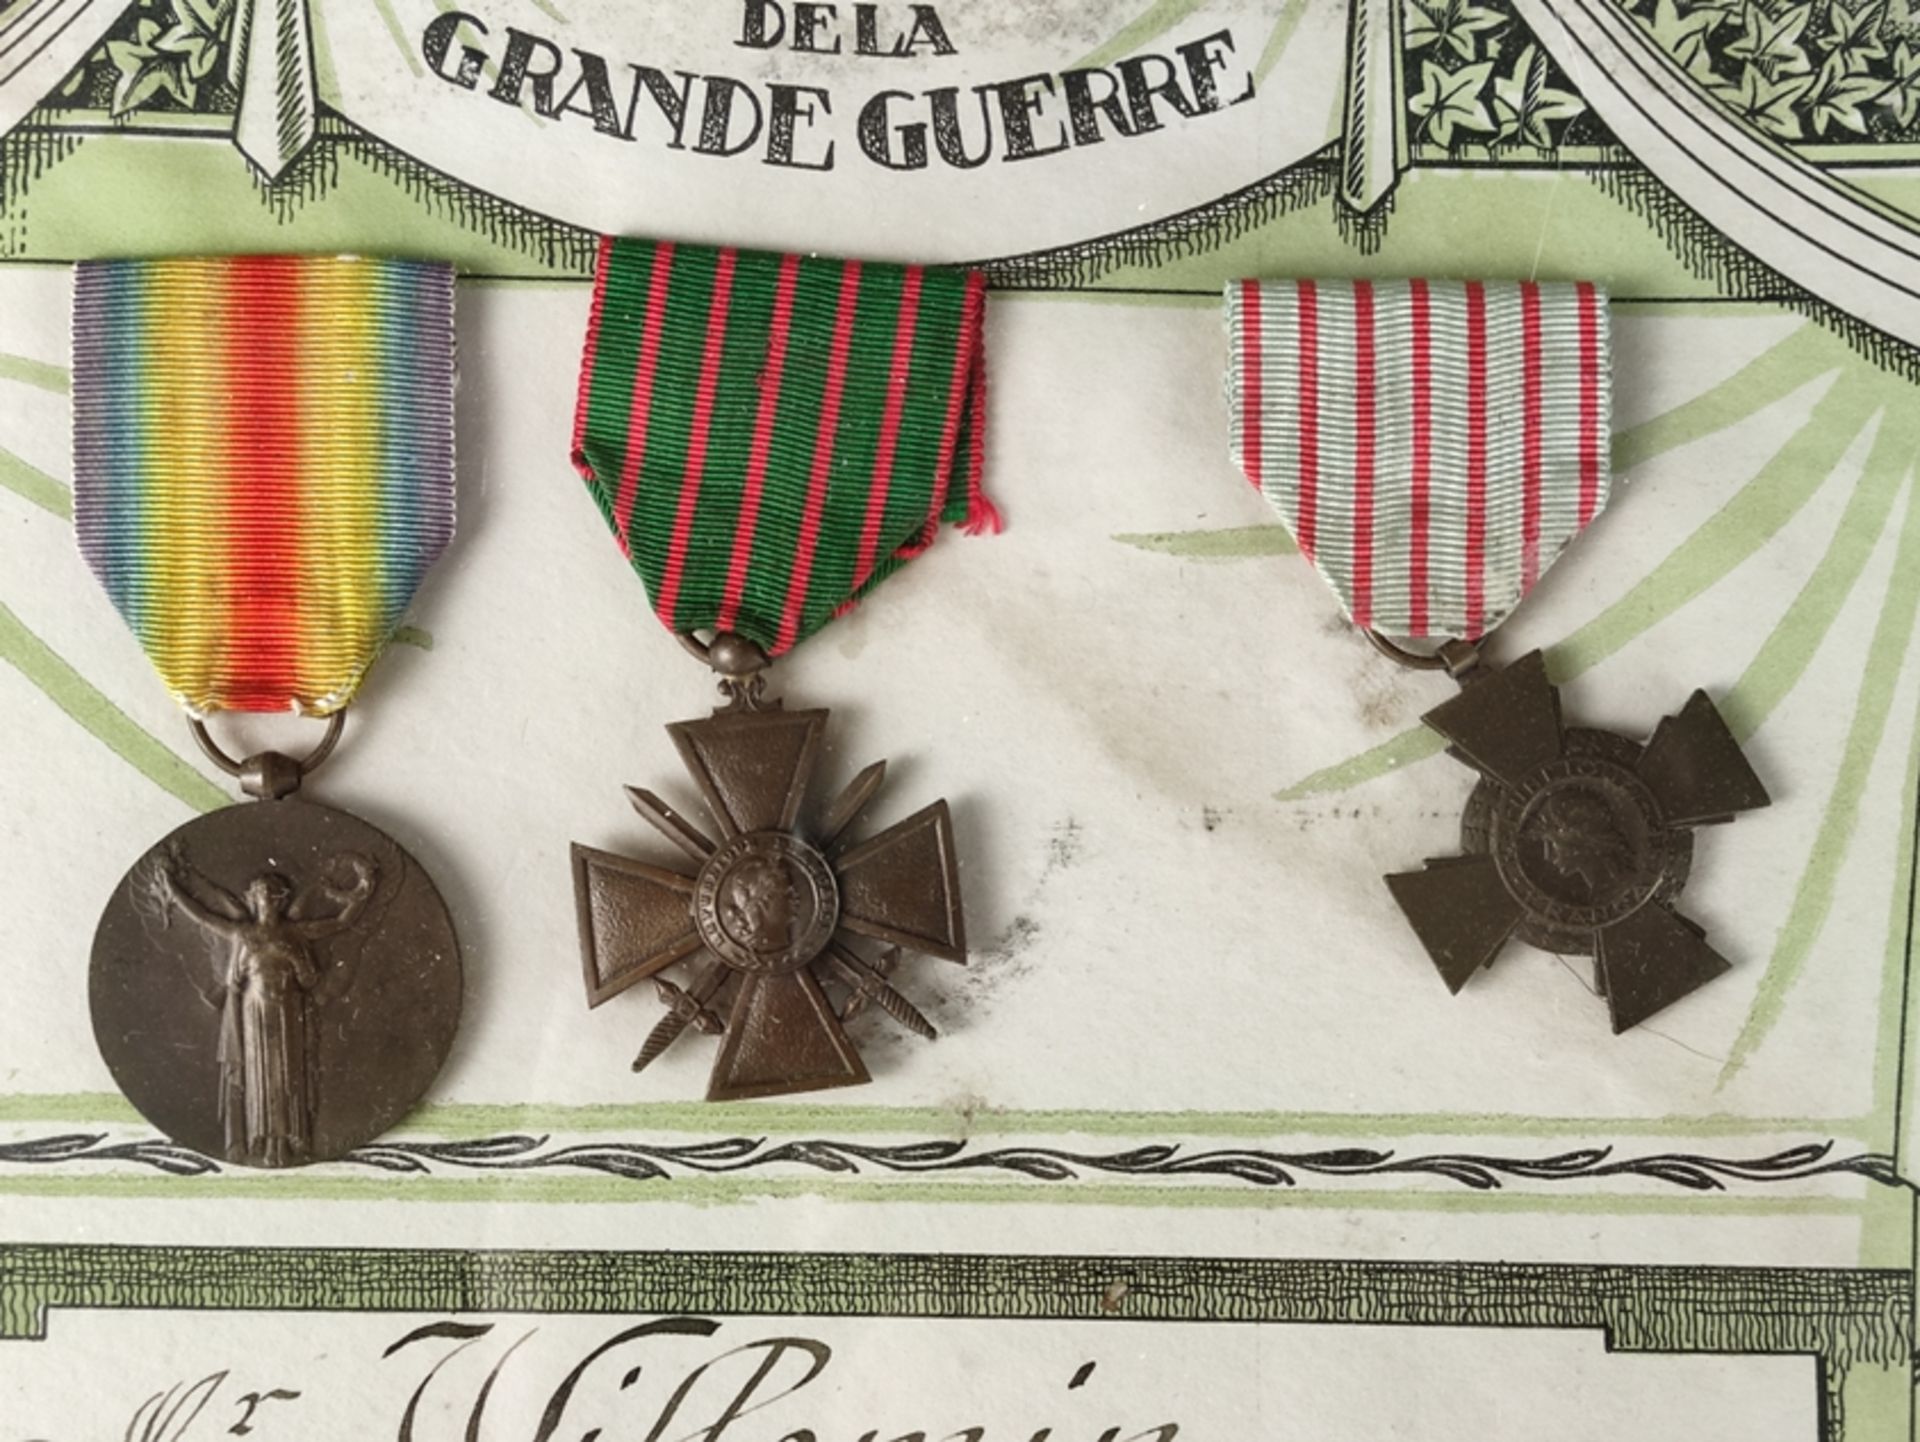 3 Ehrenabzeichen, Frankreich, Médaille Interalliée - Siegesmedaille 1914-1918, Modell Morlon, 1. WK - Bild 2 aus 2